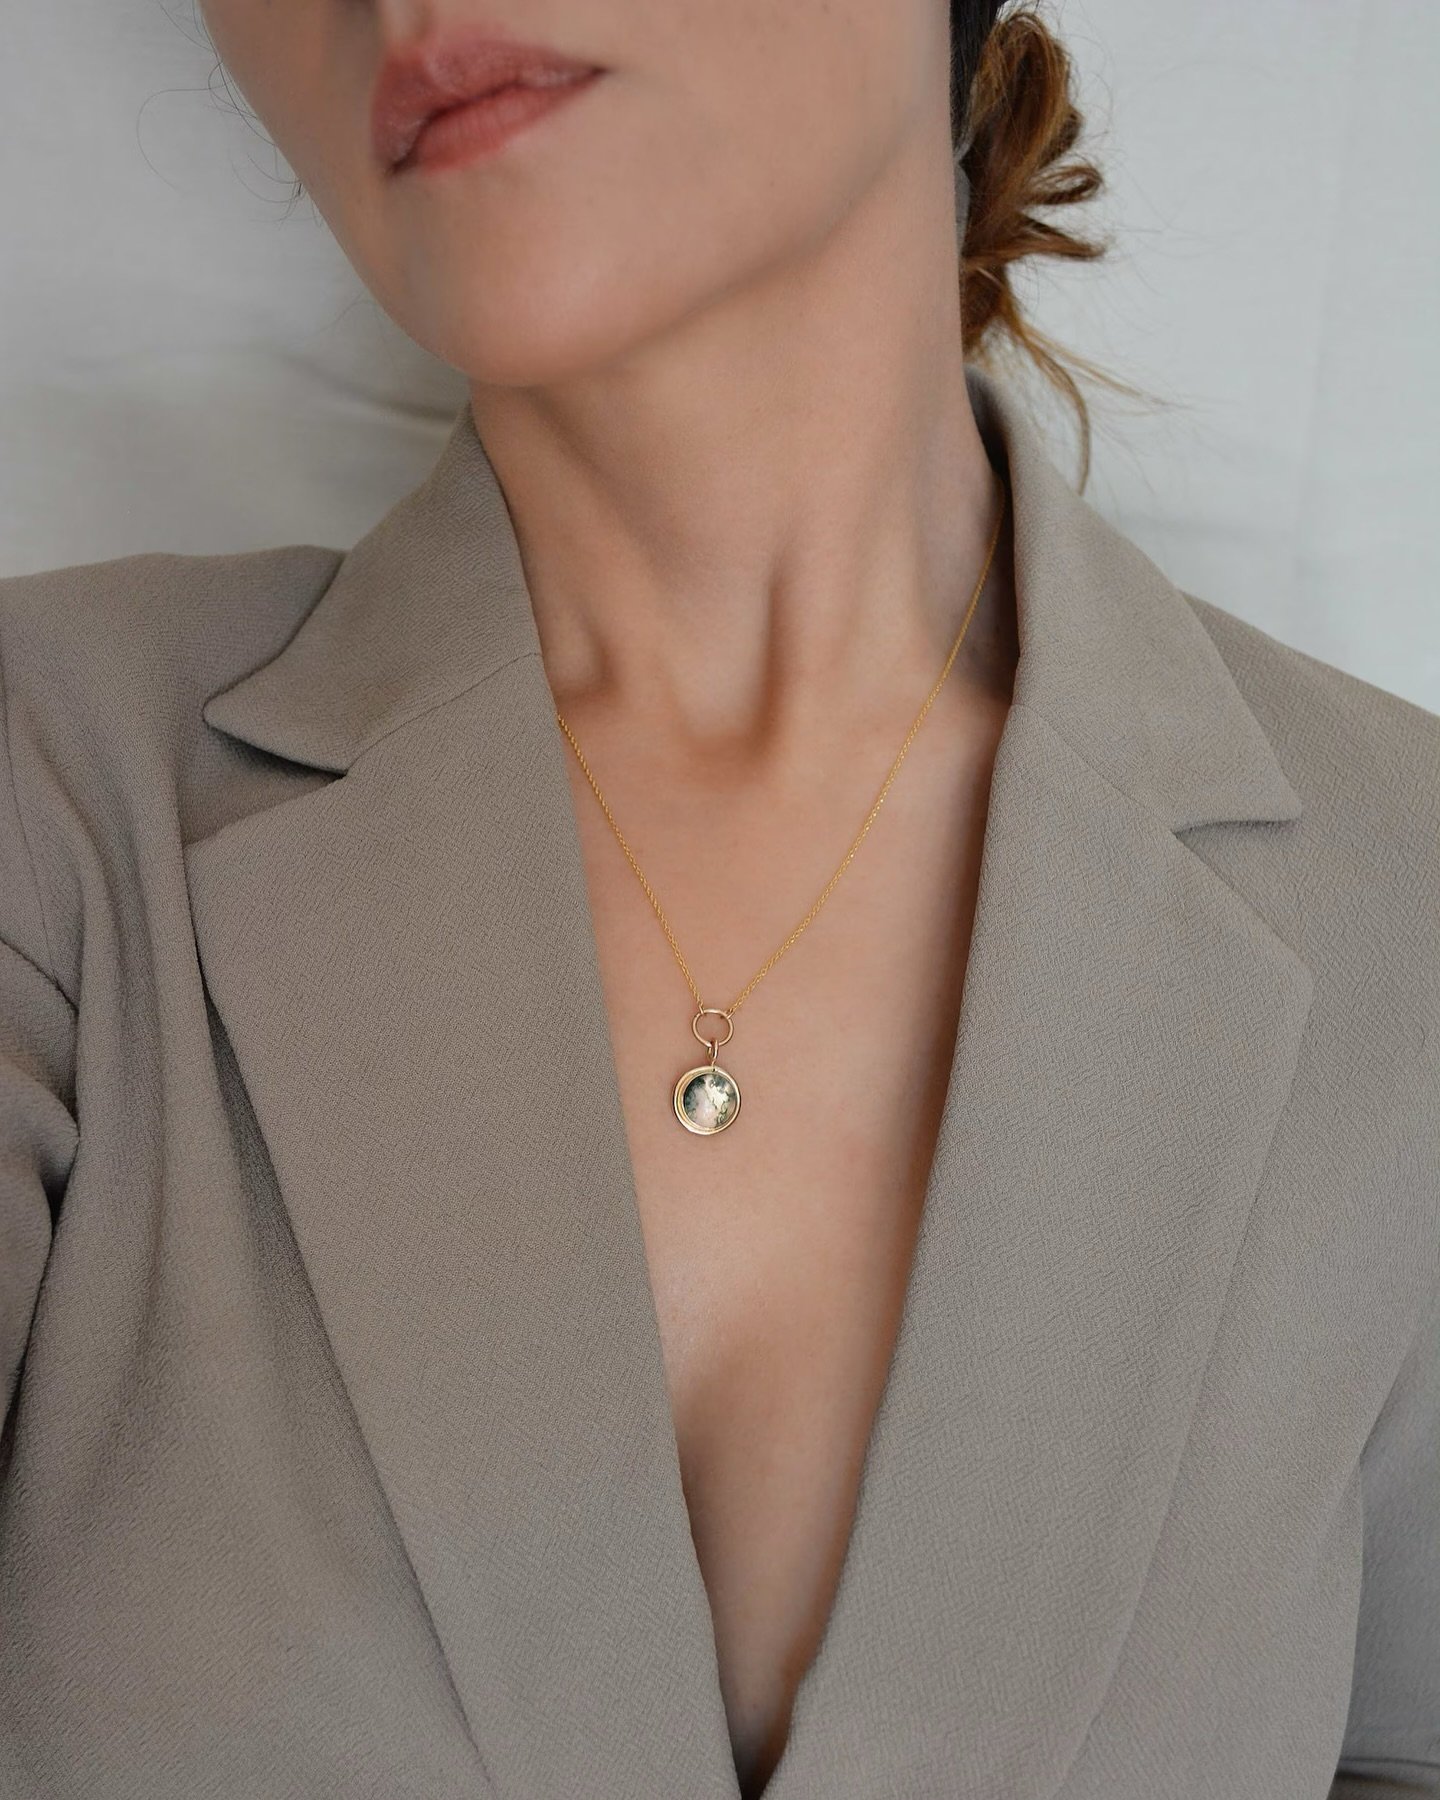 Time to girlboss this Monday with our Moss Agate Necklace!

#jewelry #necklace #necklaces #girlboss #handcrafted #handcraftedjewelry #minimalist #minimalistjewelry #denver #denvercolorado #gemandblue